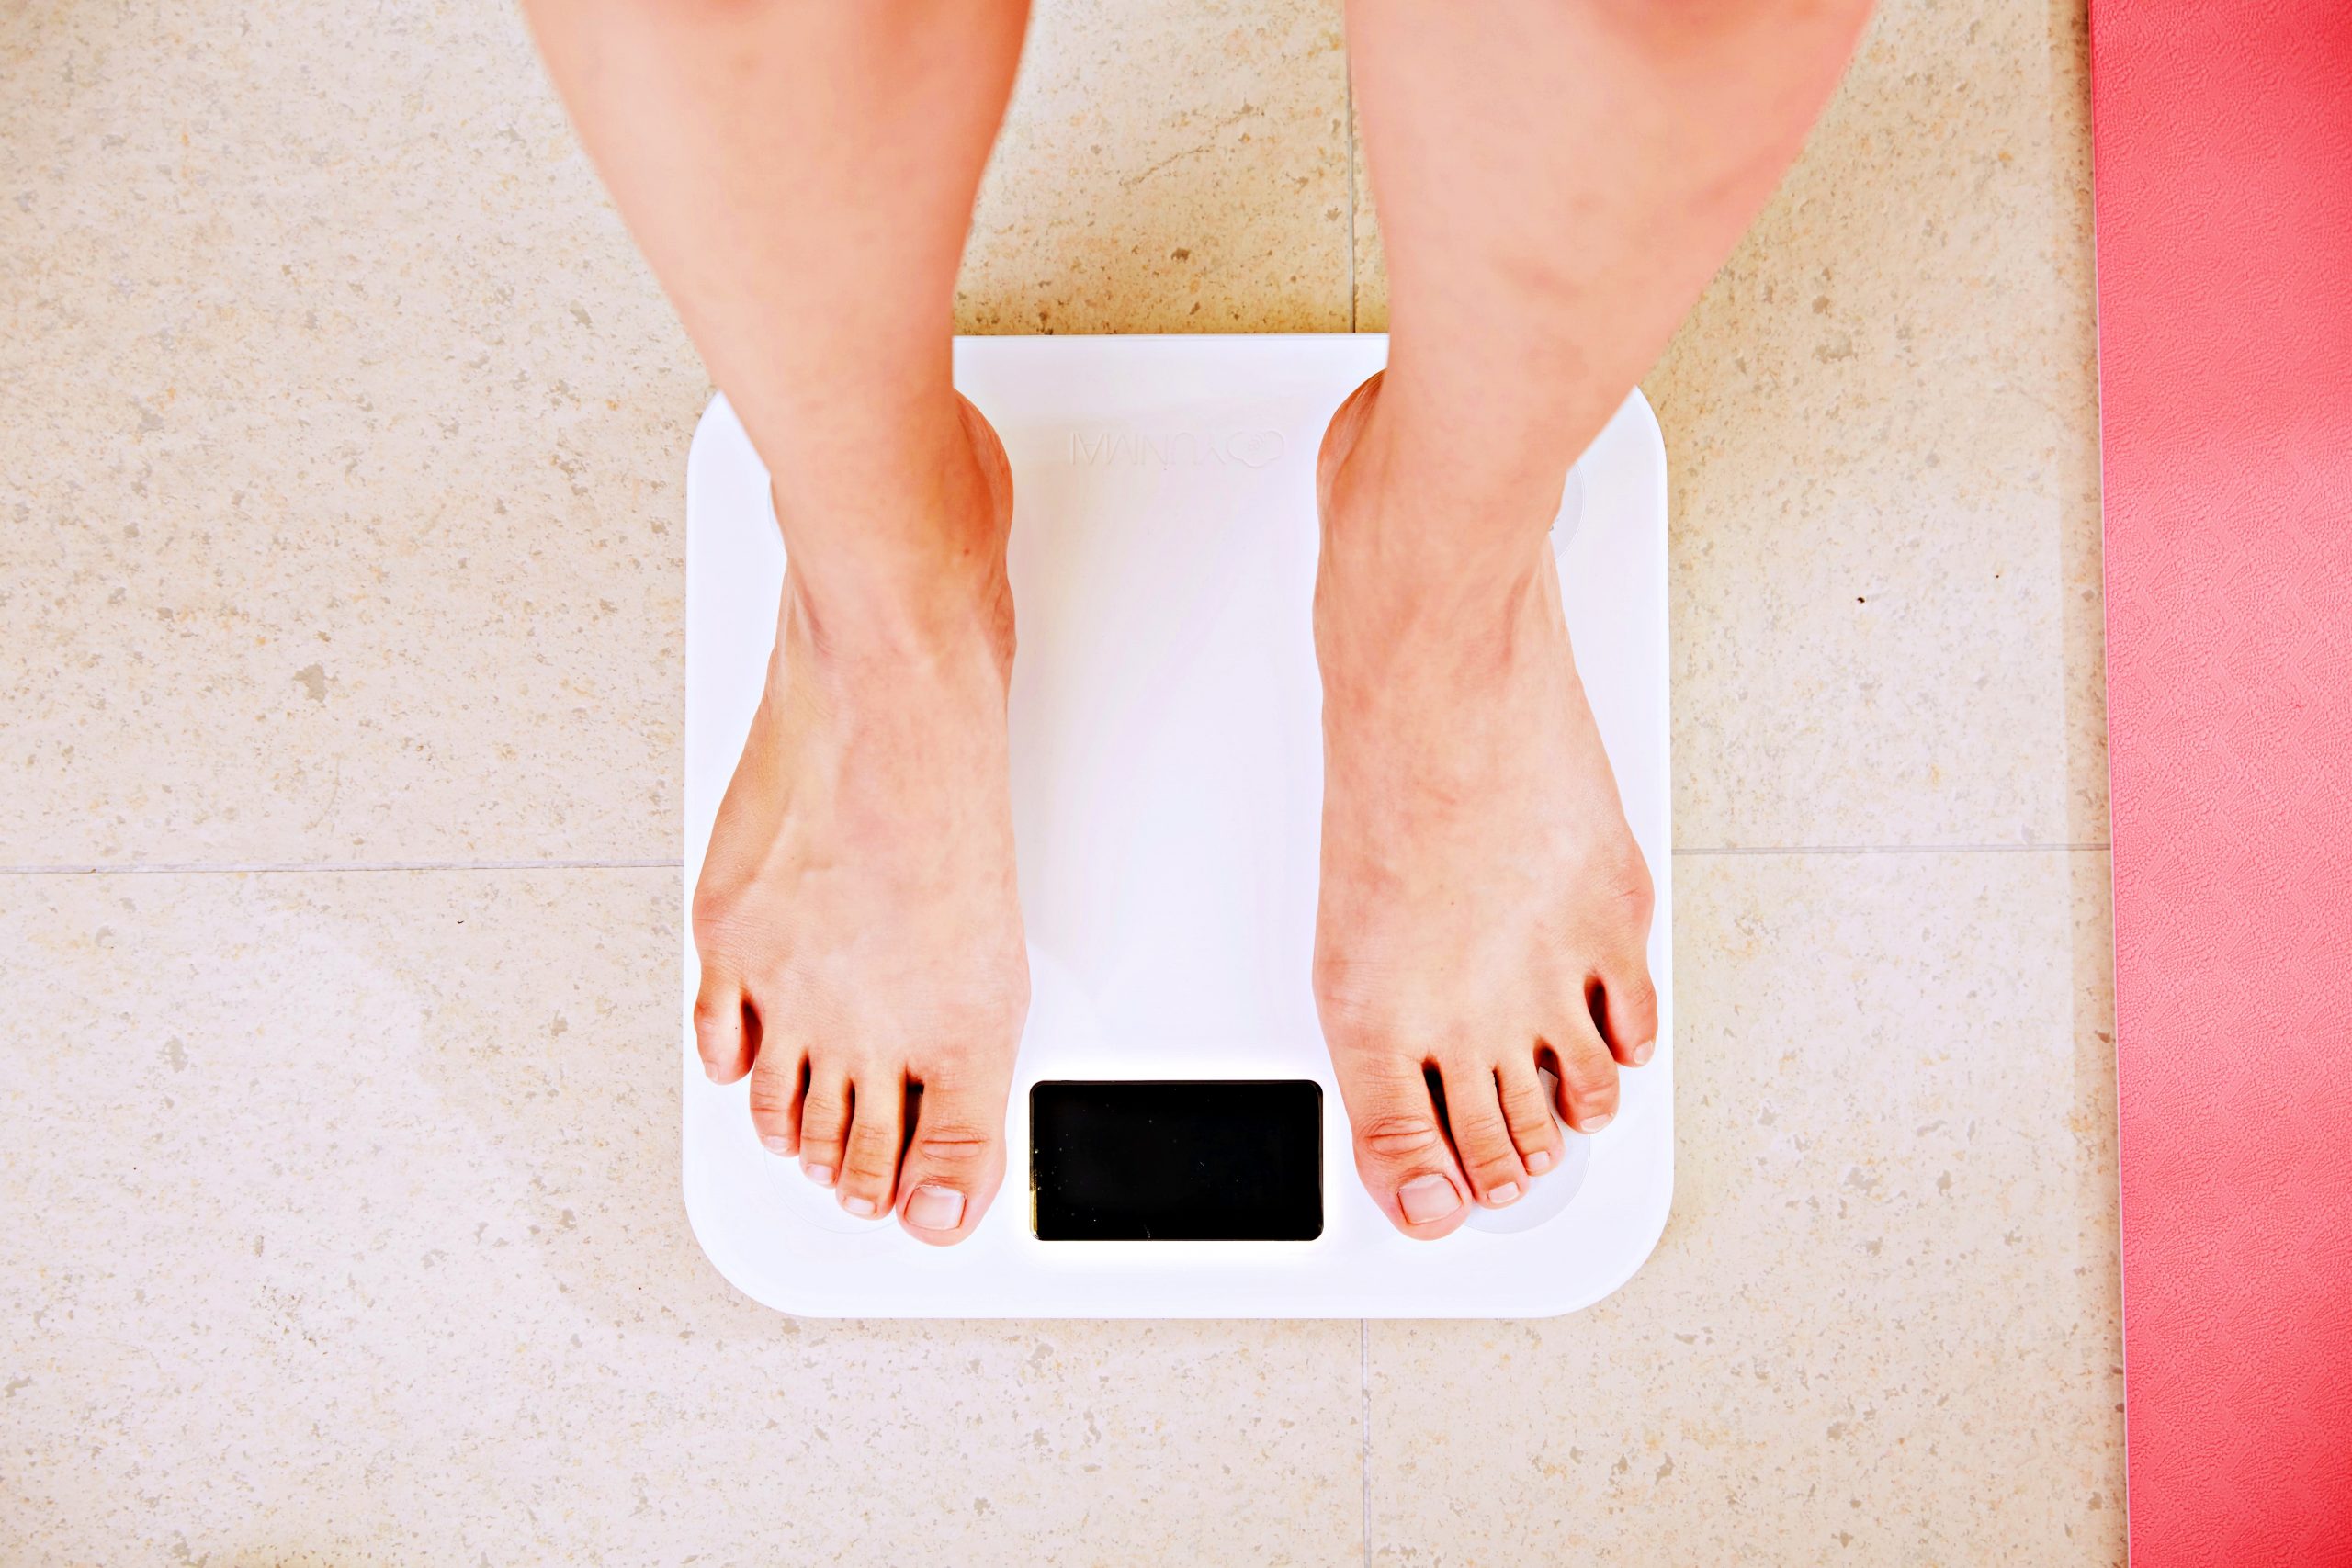 cum să ți faci greutatea să piardă în greutate ajutând soțul soția să piardă în greutate